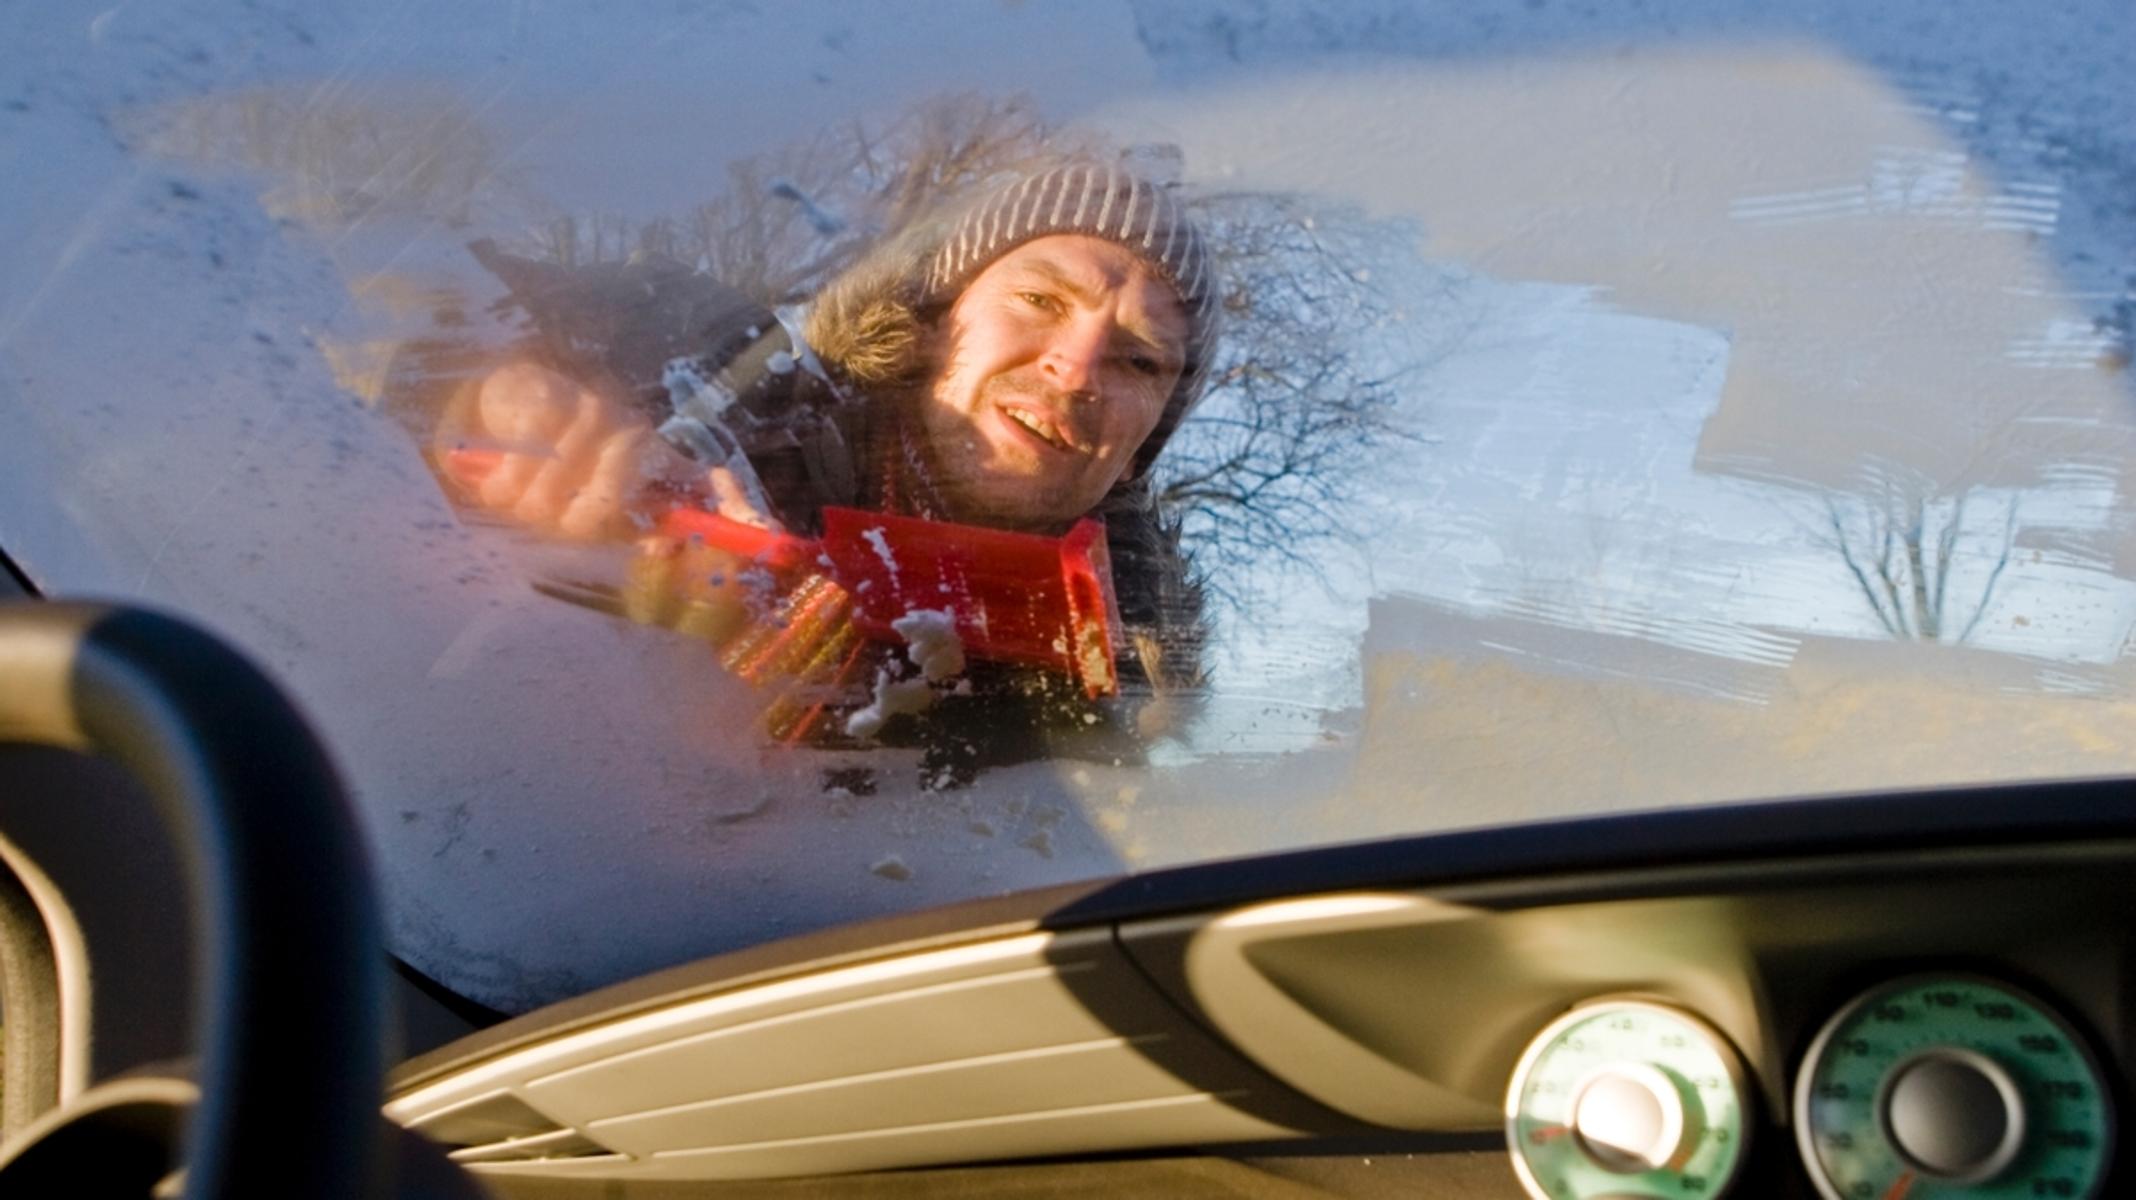 Autoscheibe vor Frost schützen - 5 Möglichkeiten